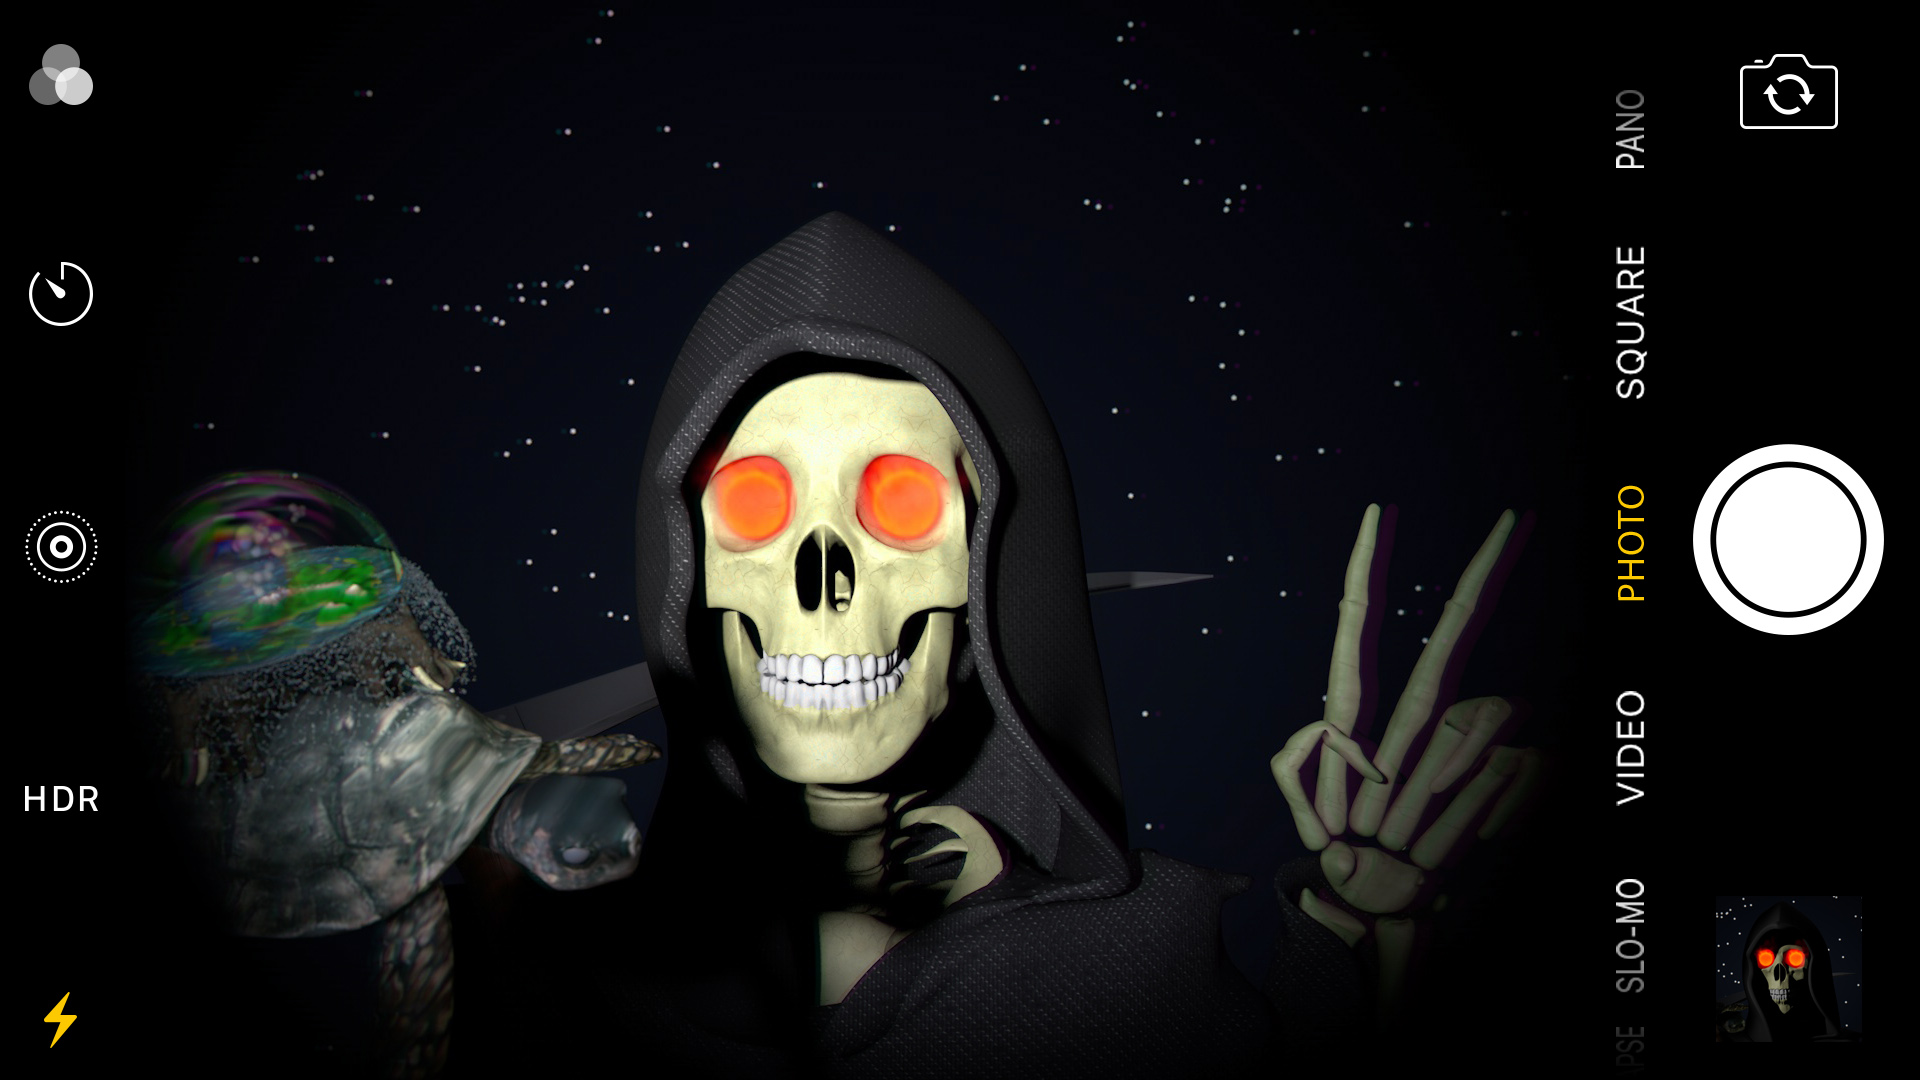 Grim Reaper selfie